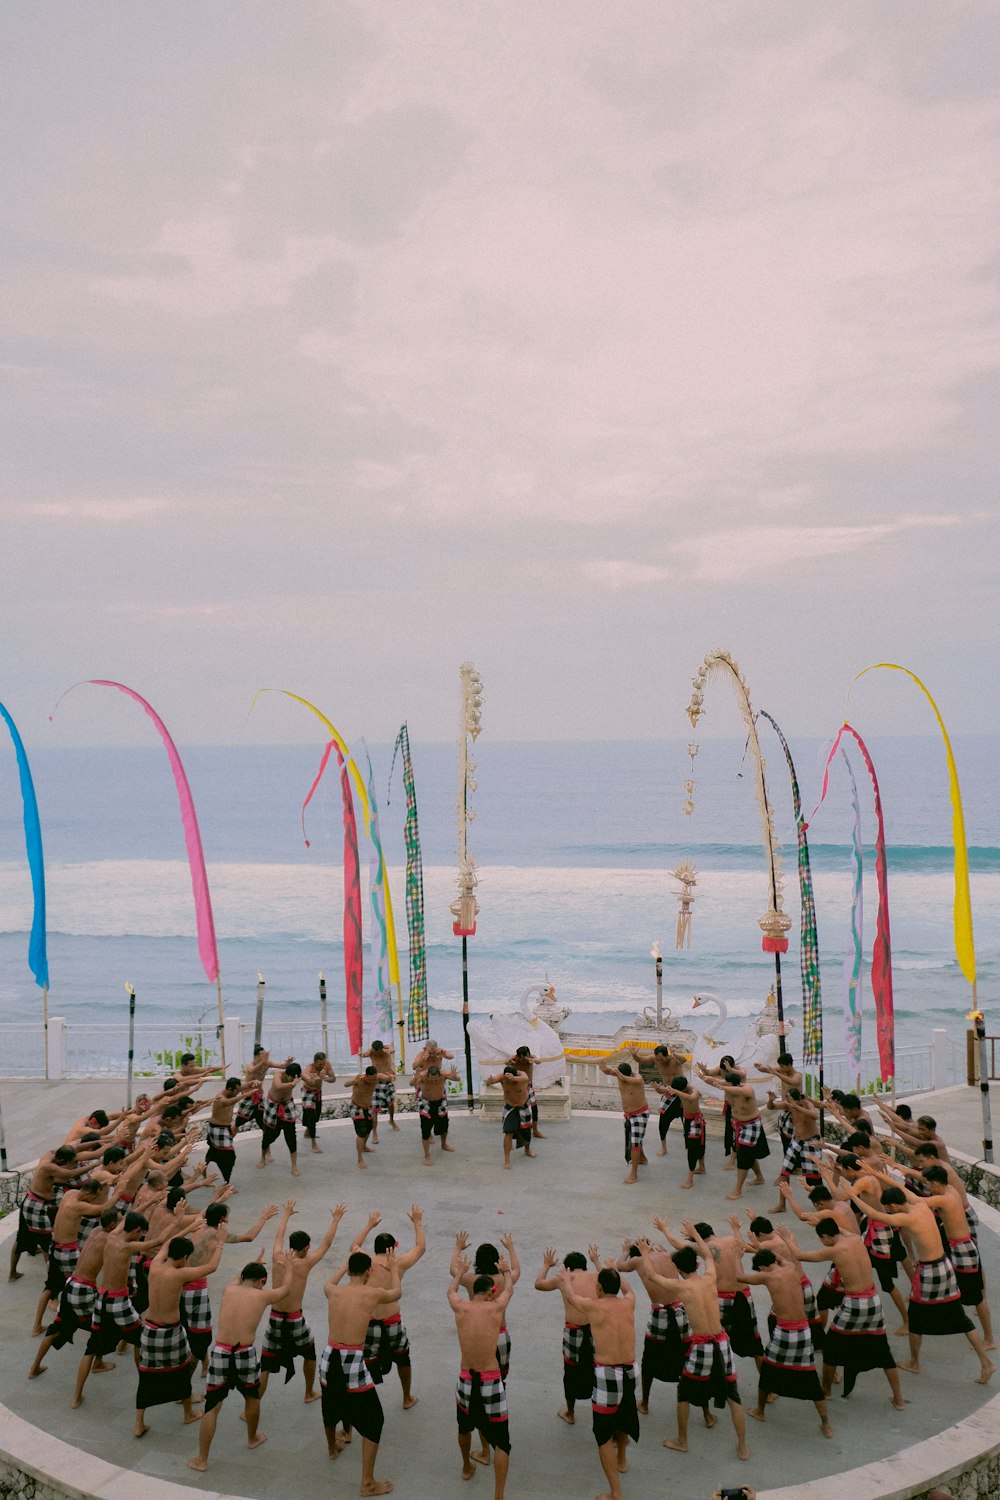 Un grupo de personas de pie en círculo en una playa